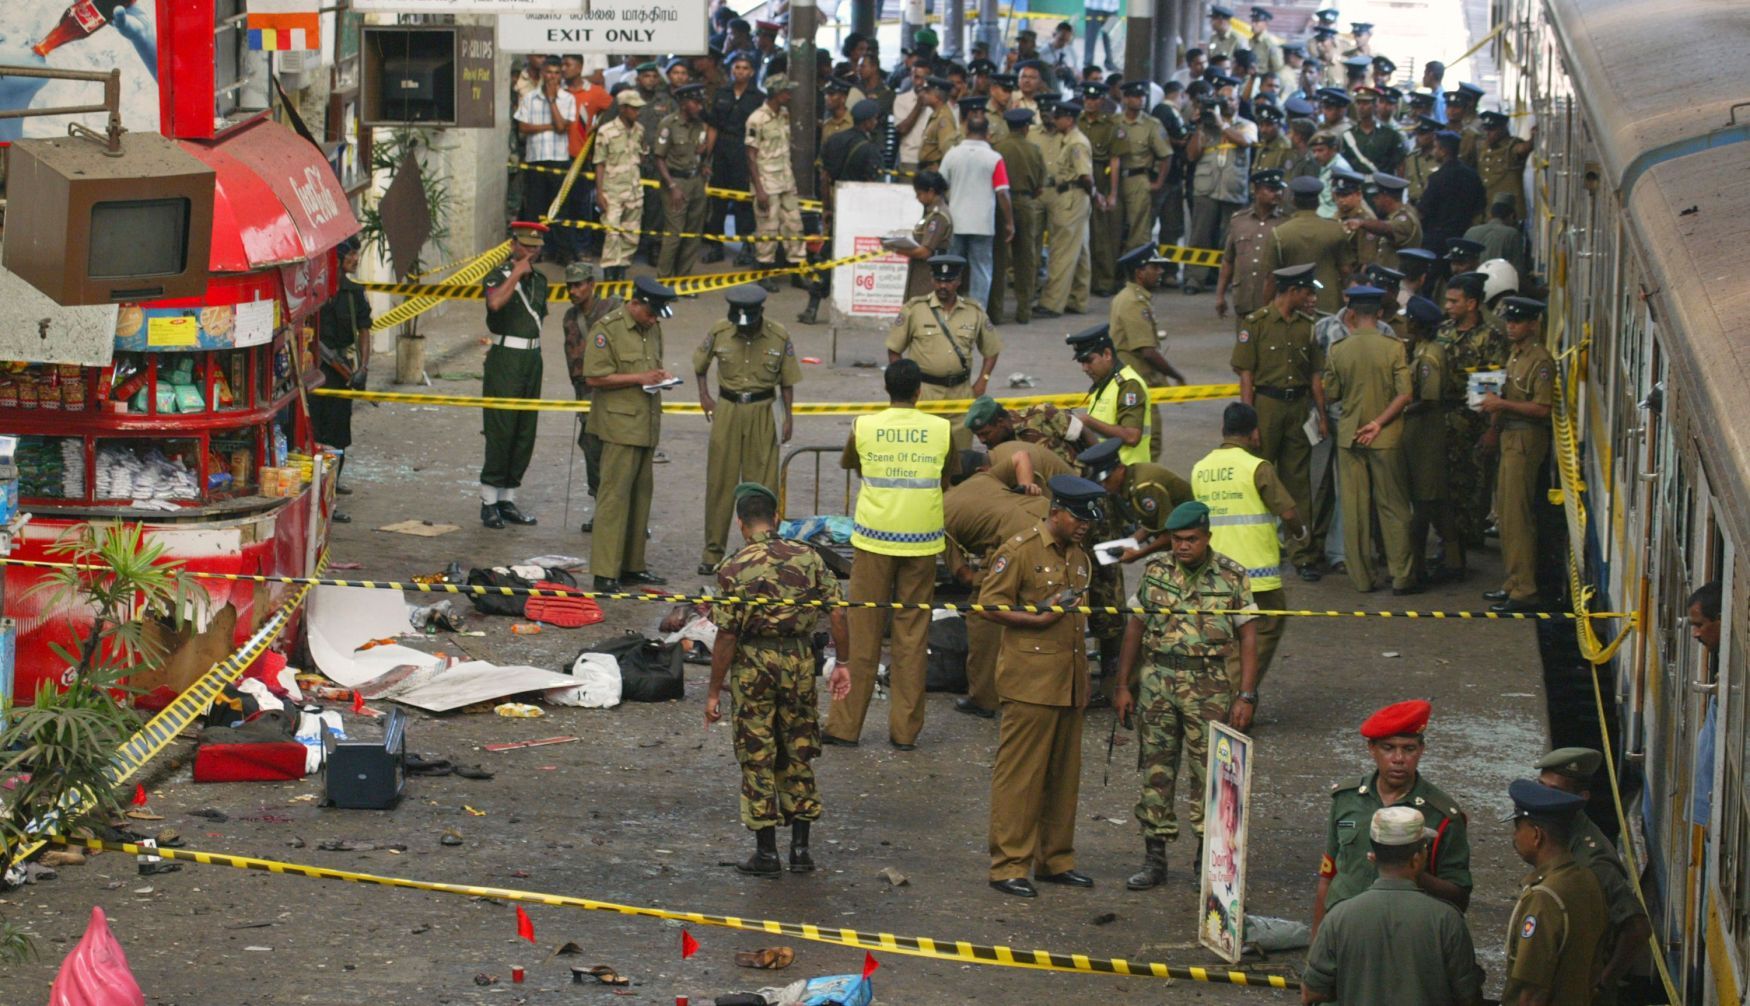 Sebevražedný bombový atentát na maraton ve Waliweriayae na Srí Lance si v listopadu 2008 si vyžádal patnáct obětí včetně jednoho ministra.